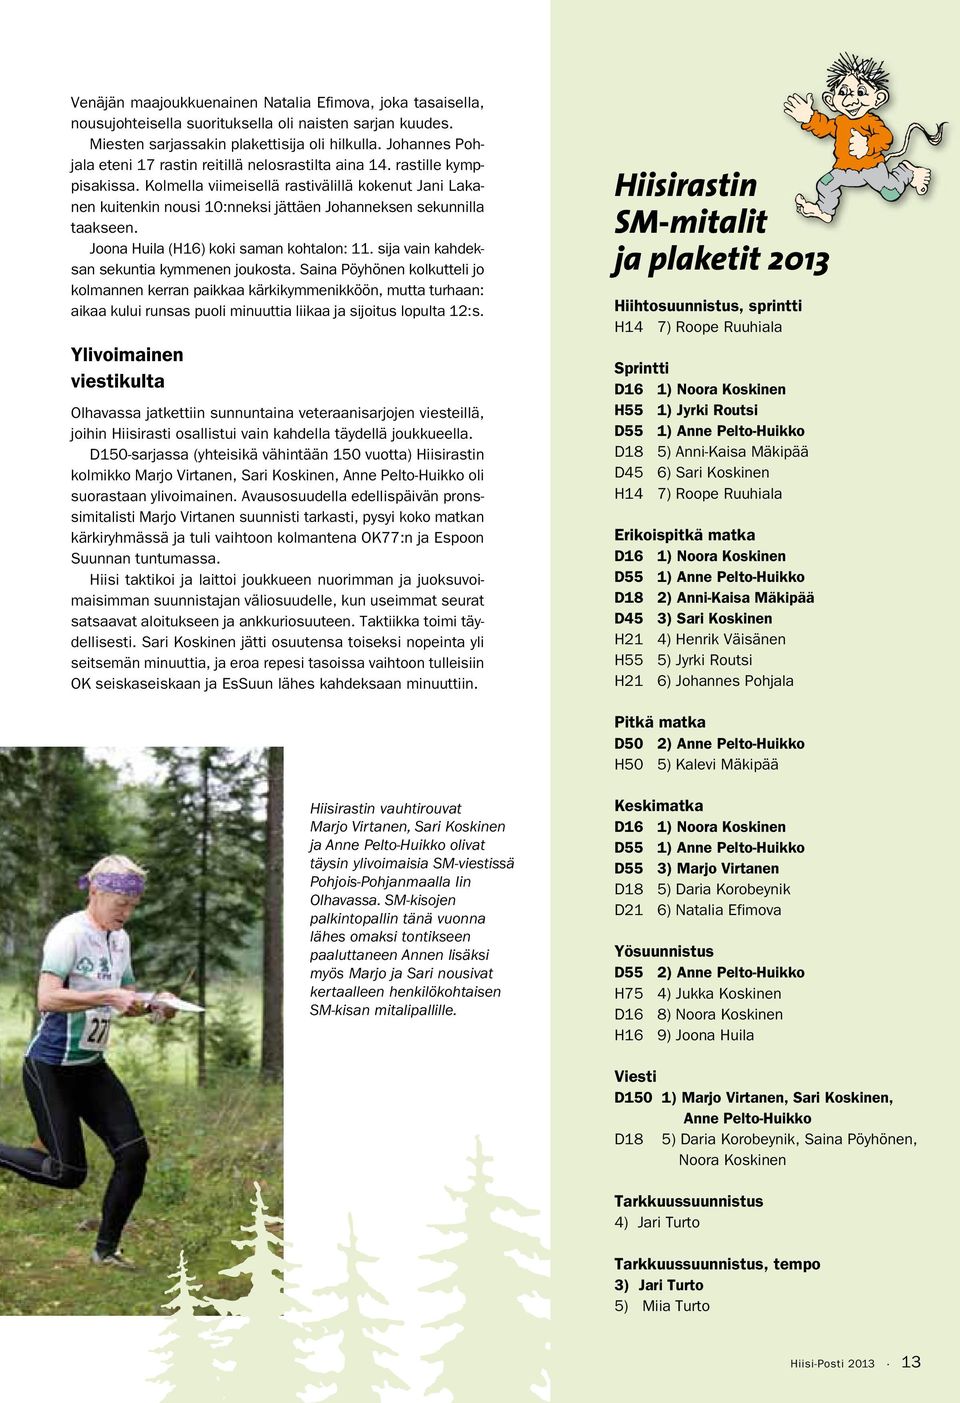 Kolmella viimeisellä rastivälillä kokenut Jani Lakanen kuitenkin nousi 10:nneksi jättäen Johanneksen sekunnilla taakseen. Joona Huila (H16) koki saman kohtalon: 11.